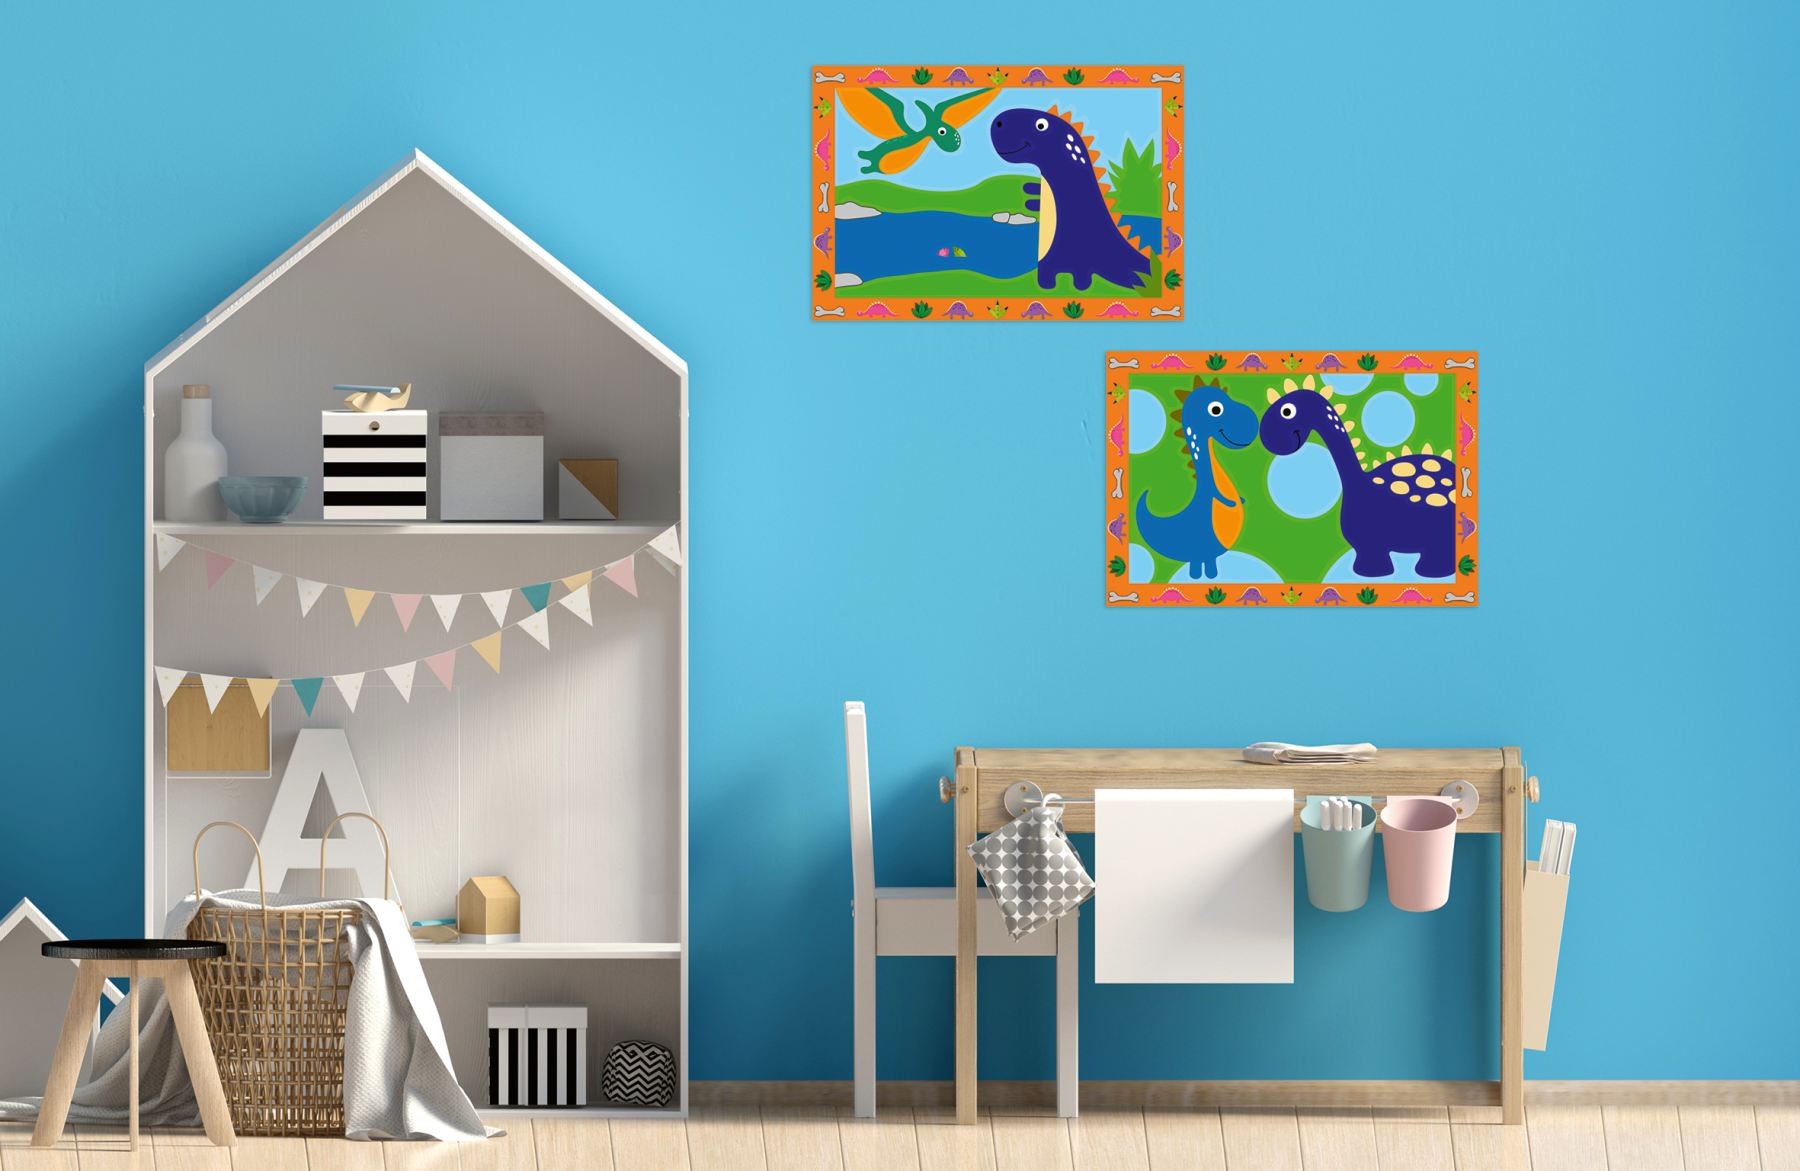 Ravensburer - creart serie junior, dinosauri, kit dipingere con i numeri, contiene 2 tavole prestampate, pennello, colori, gioco creativo per maschi e femmine dai 5+ anni di età - RAVENSBURGER